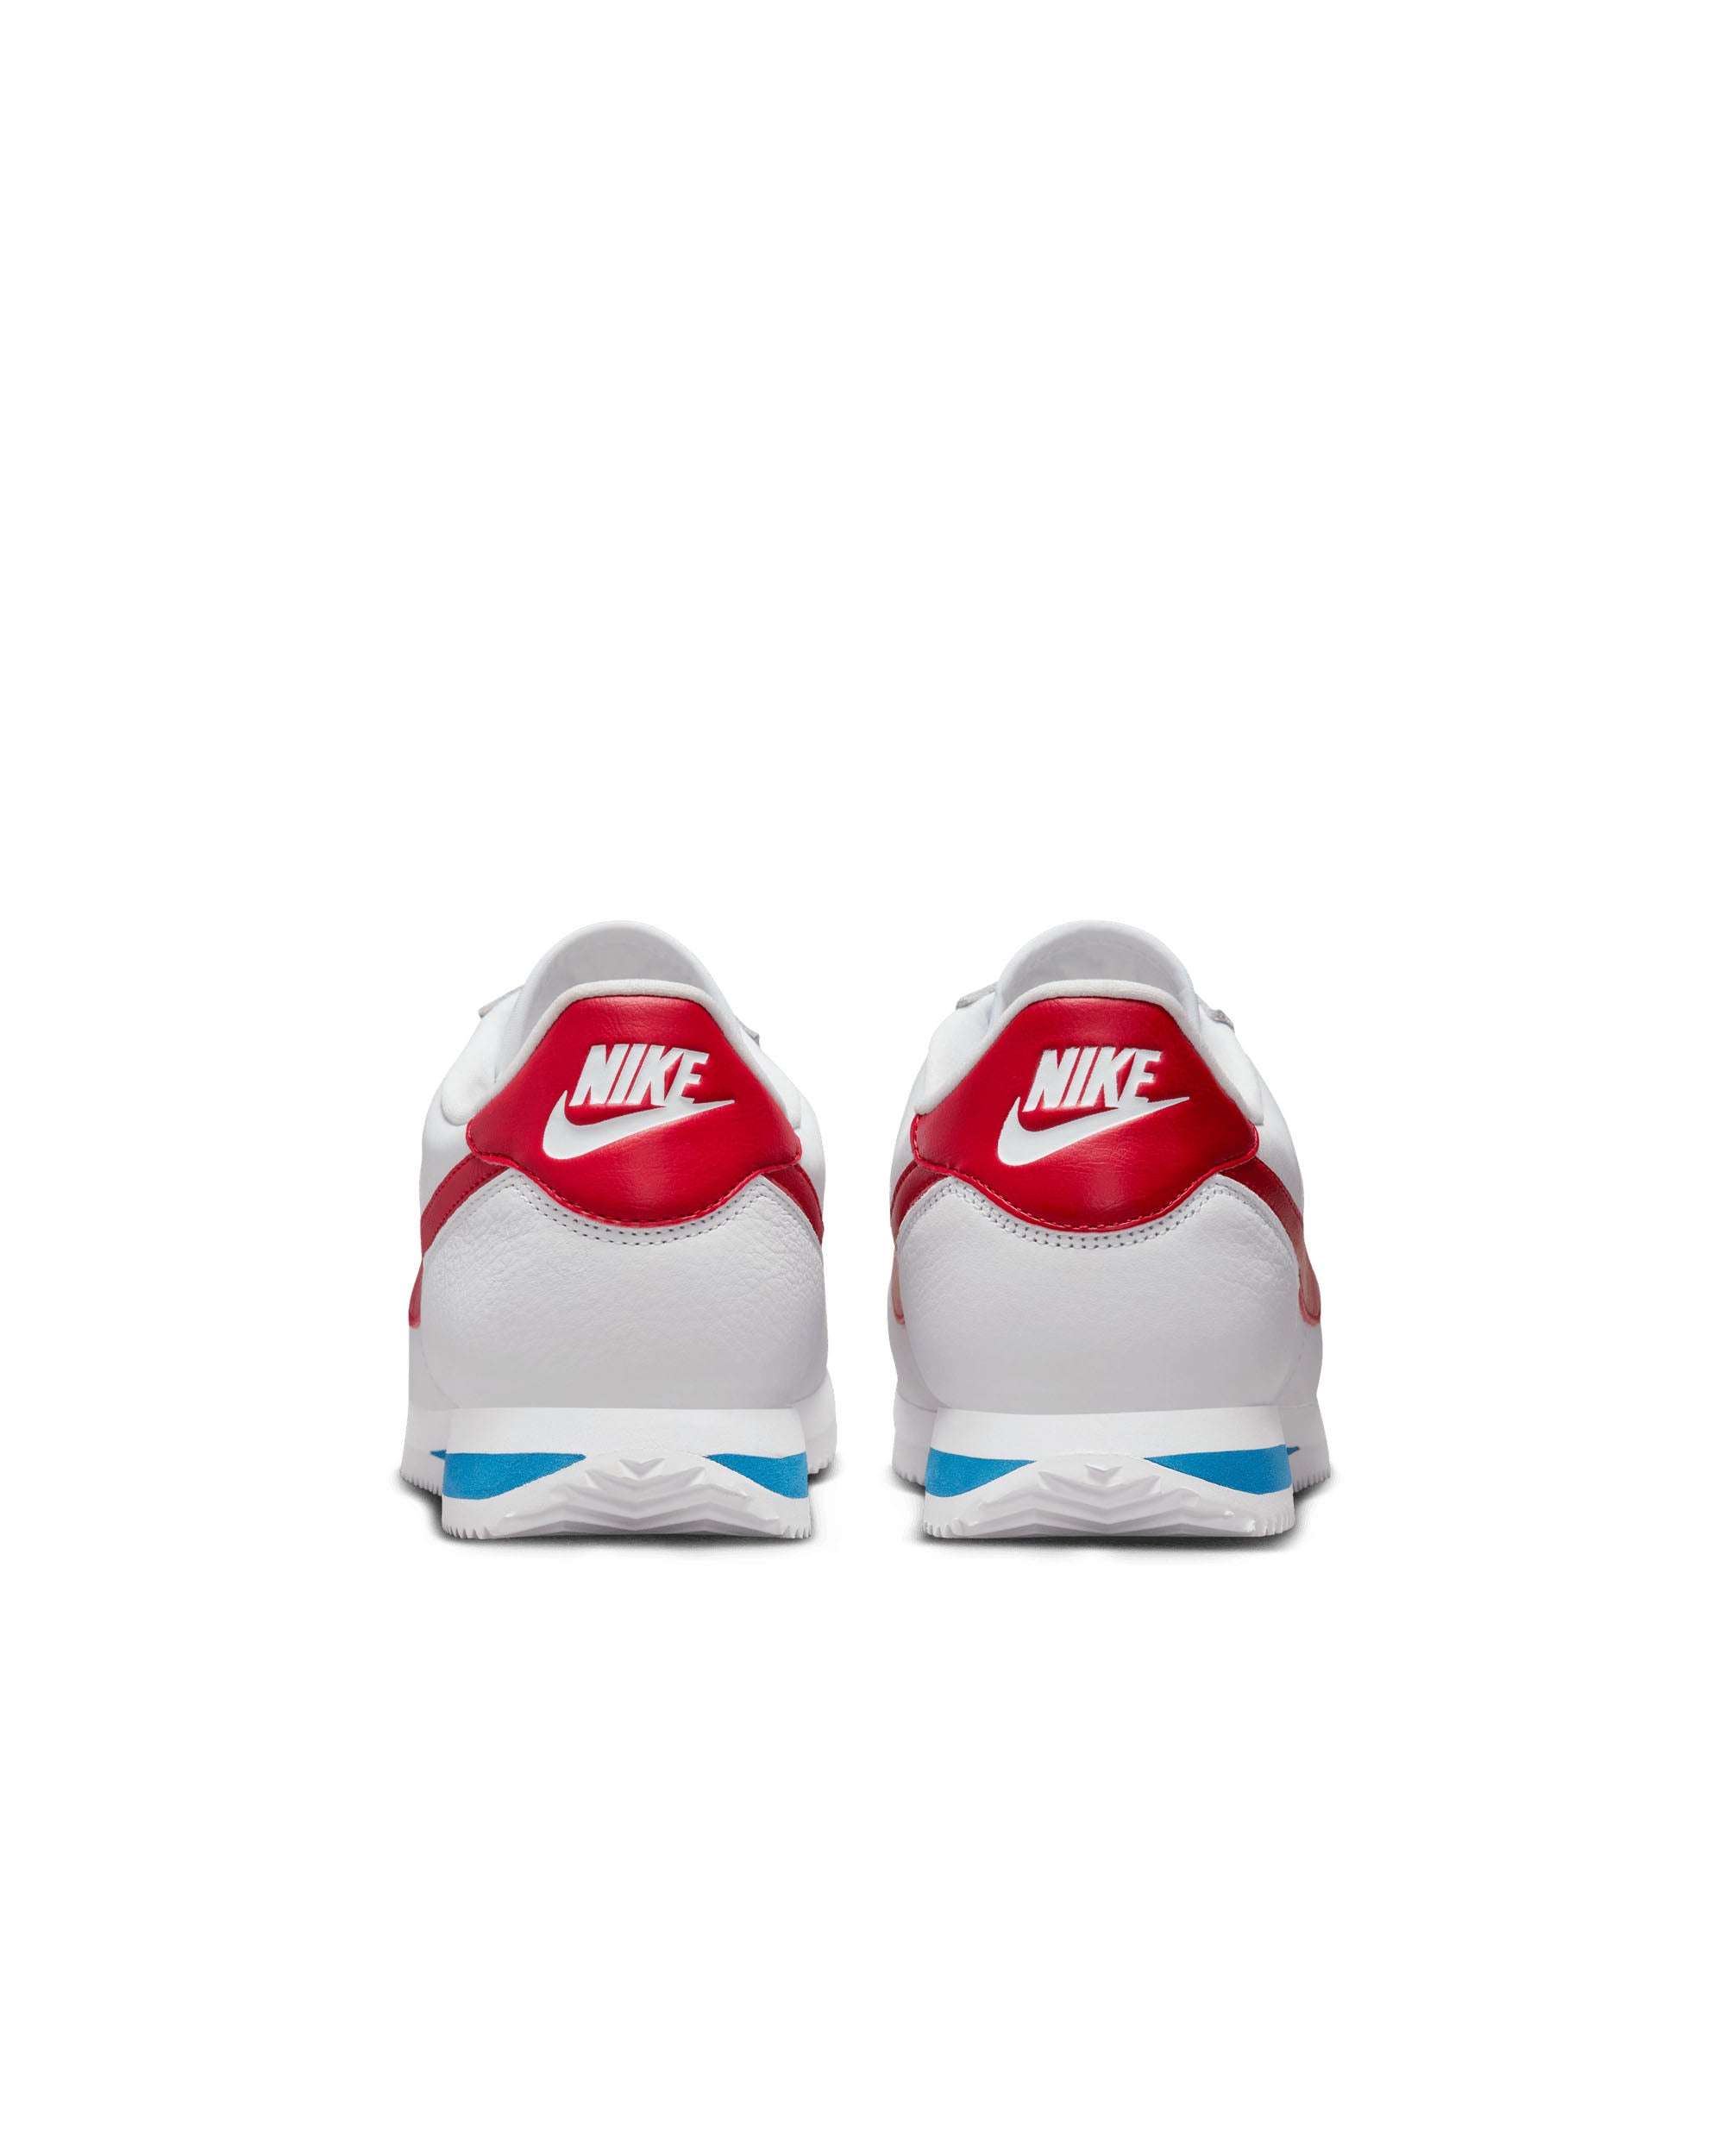 Nike Cortez - White / Varsity Red-Varsity Blue